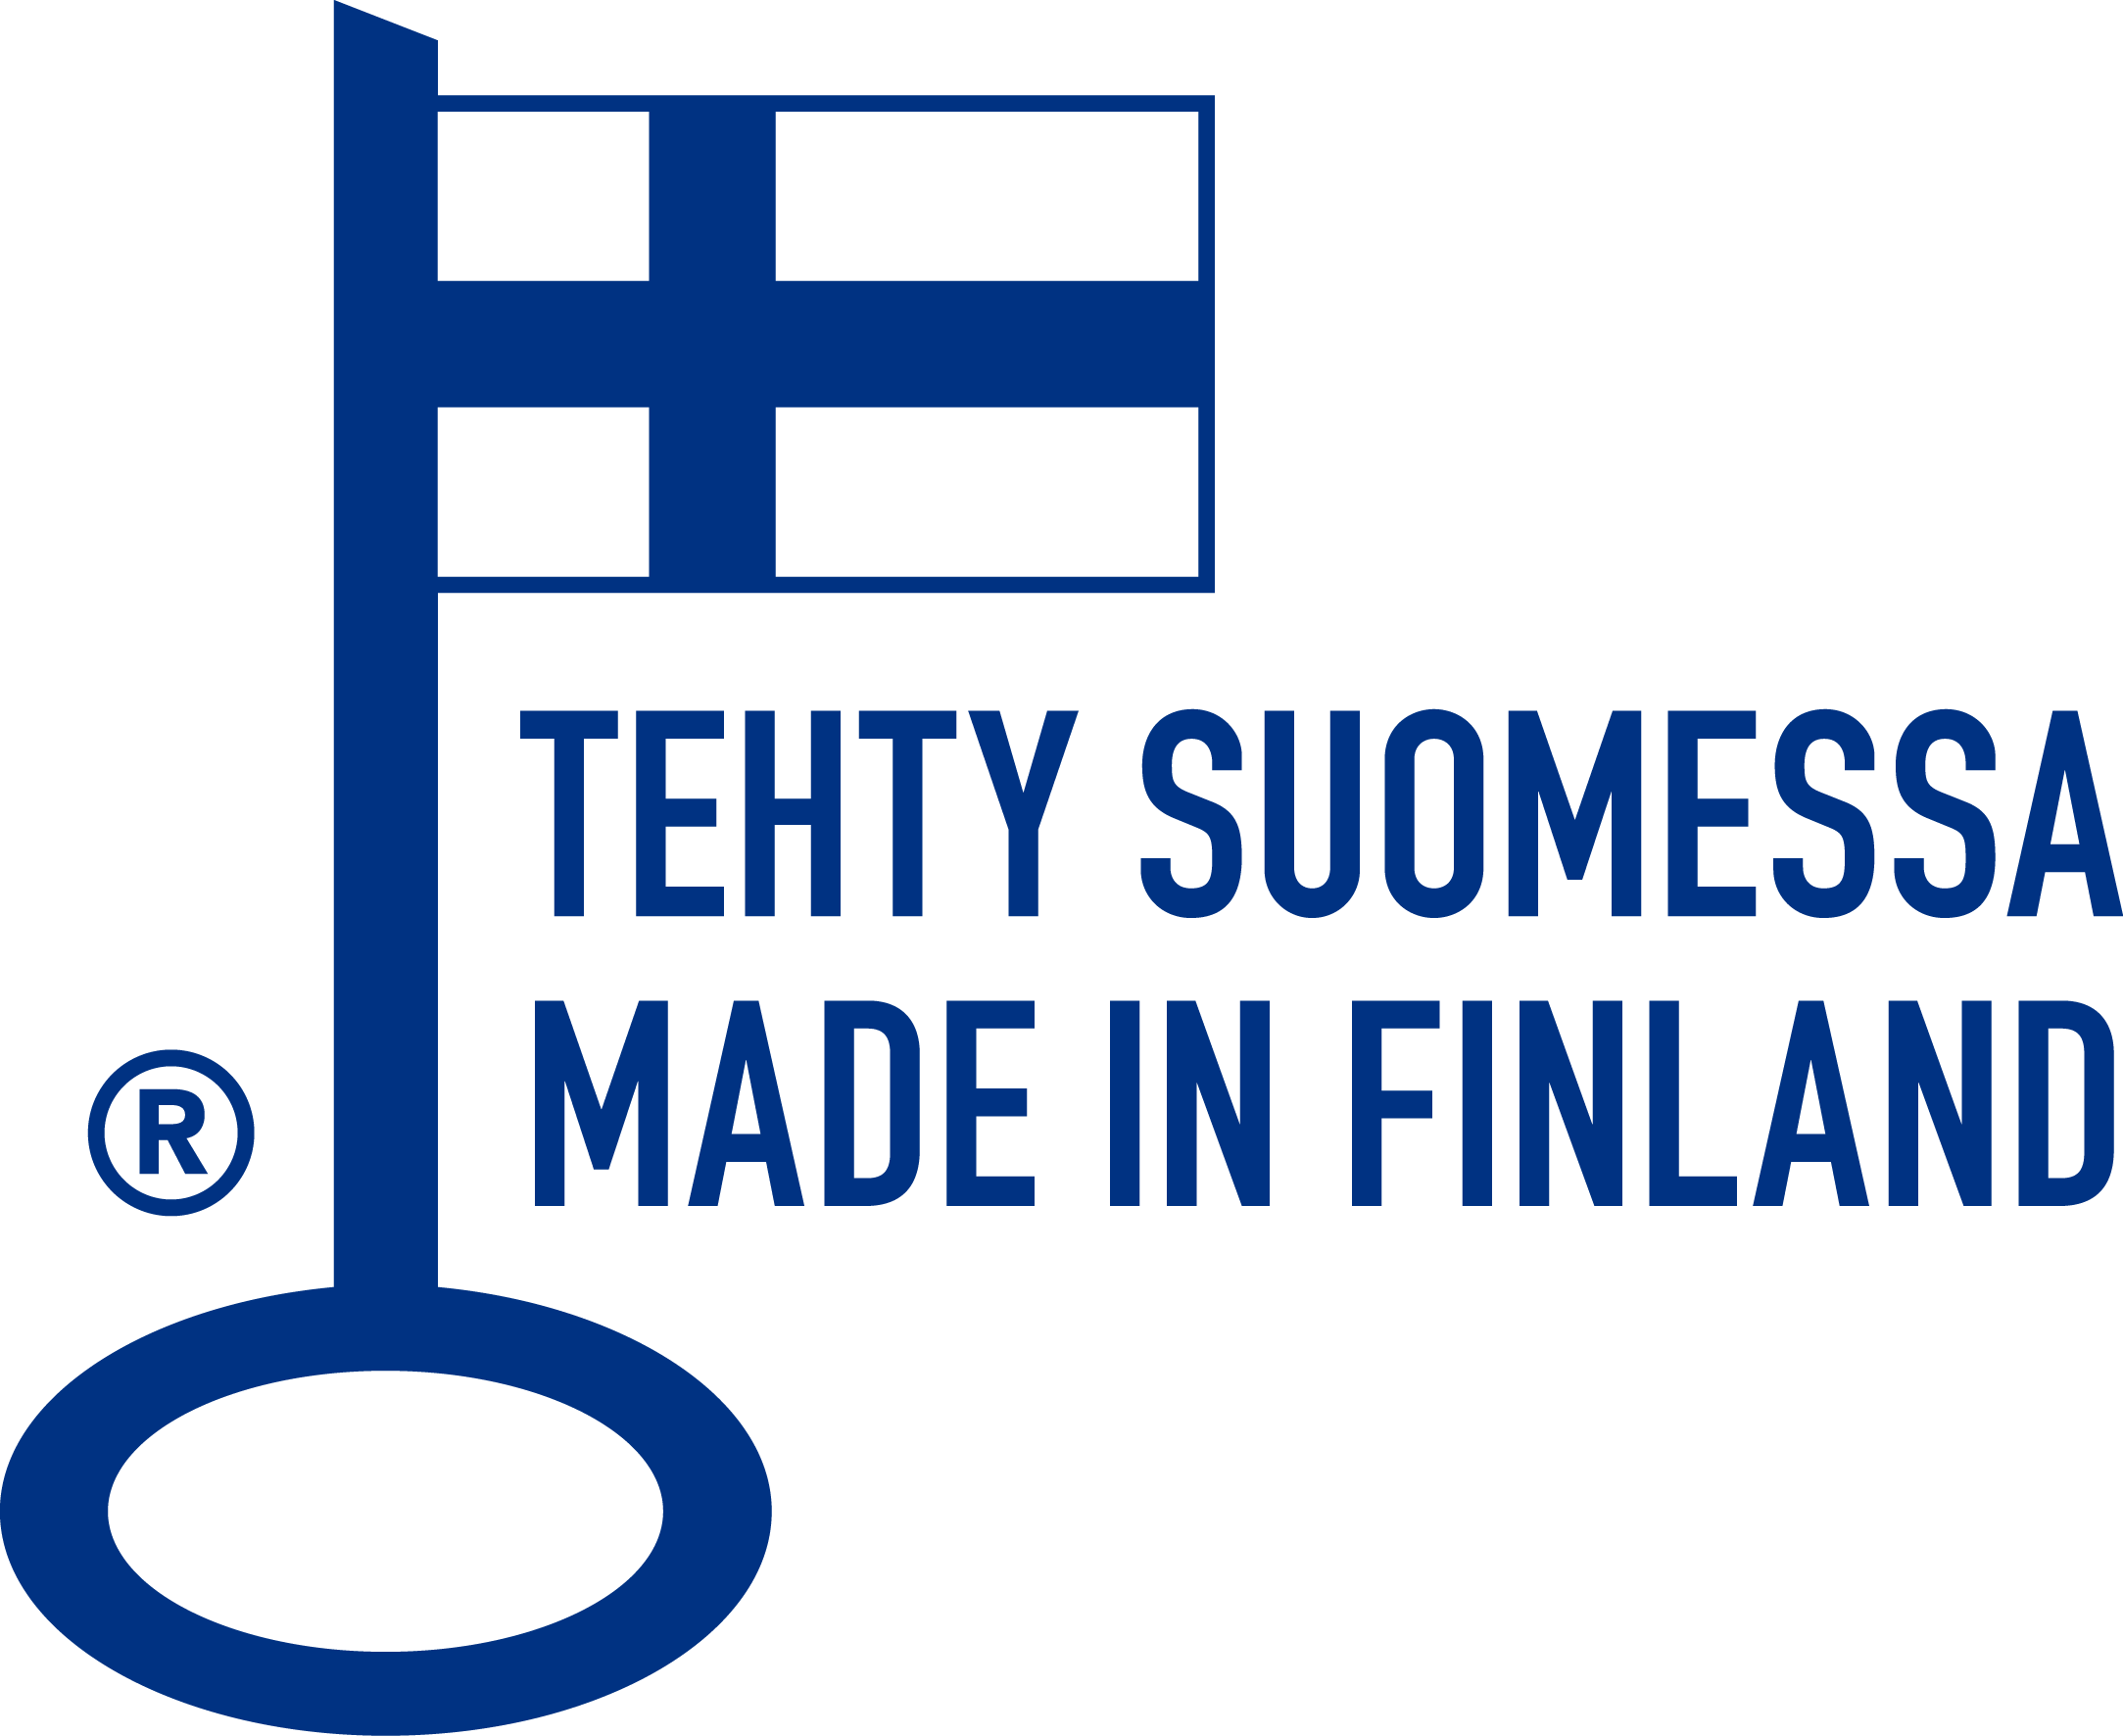 Avainlippu: Tehty Suomessa - Made in Finland